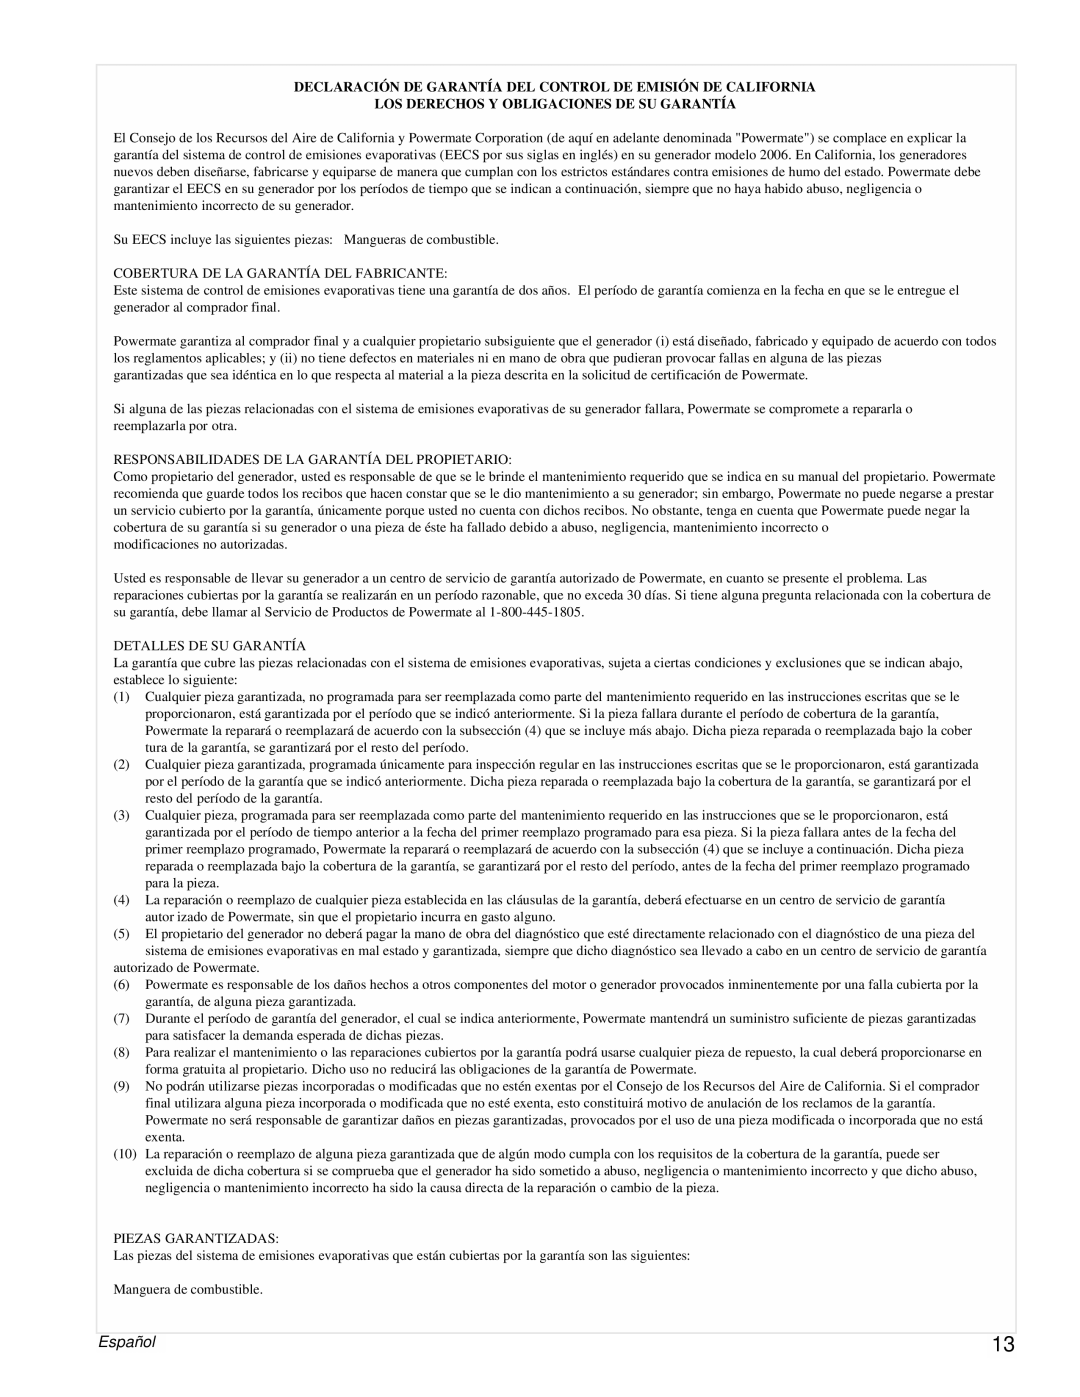 Powermate PMC496751 manual Español, Los Derechos Y Obligaciones De Su Garantía 